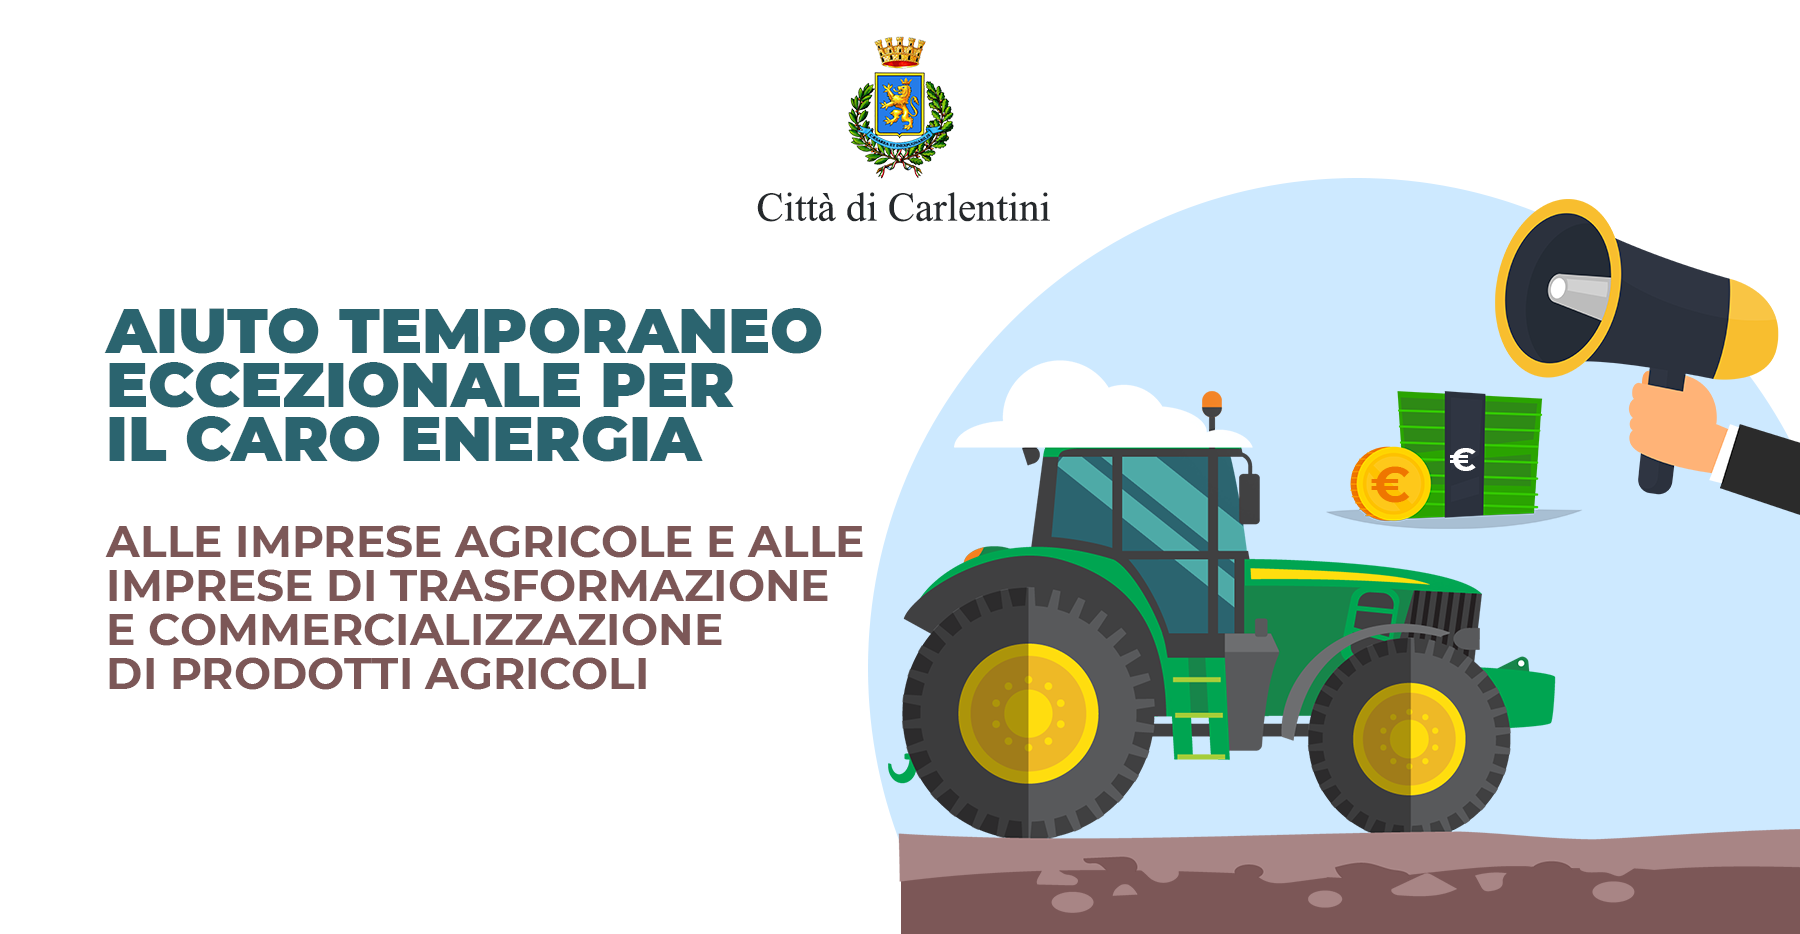 Caro energia: aiuto temporaneo eccezionale alle imprese agricole e di trasformazione/commercializzazione di prodotti agricoli